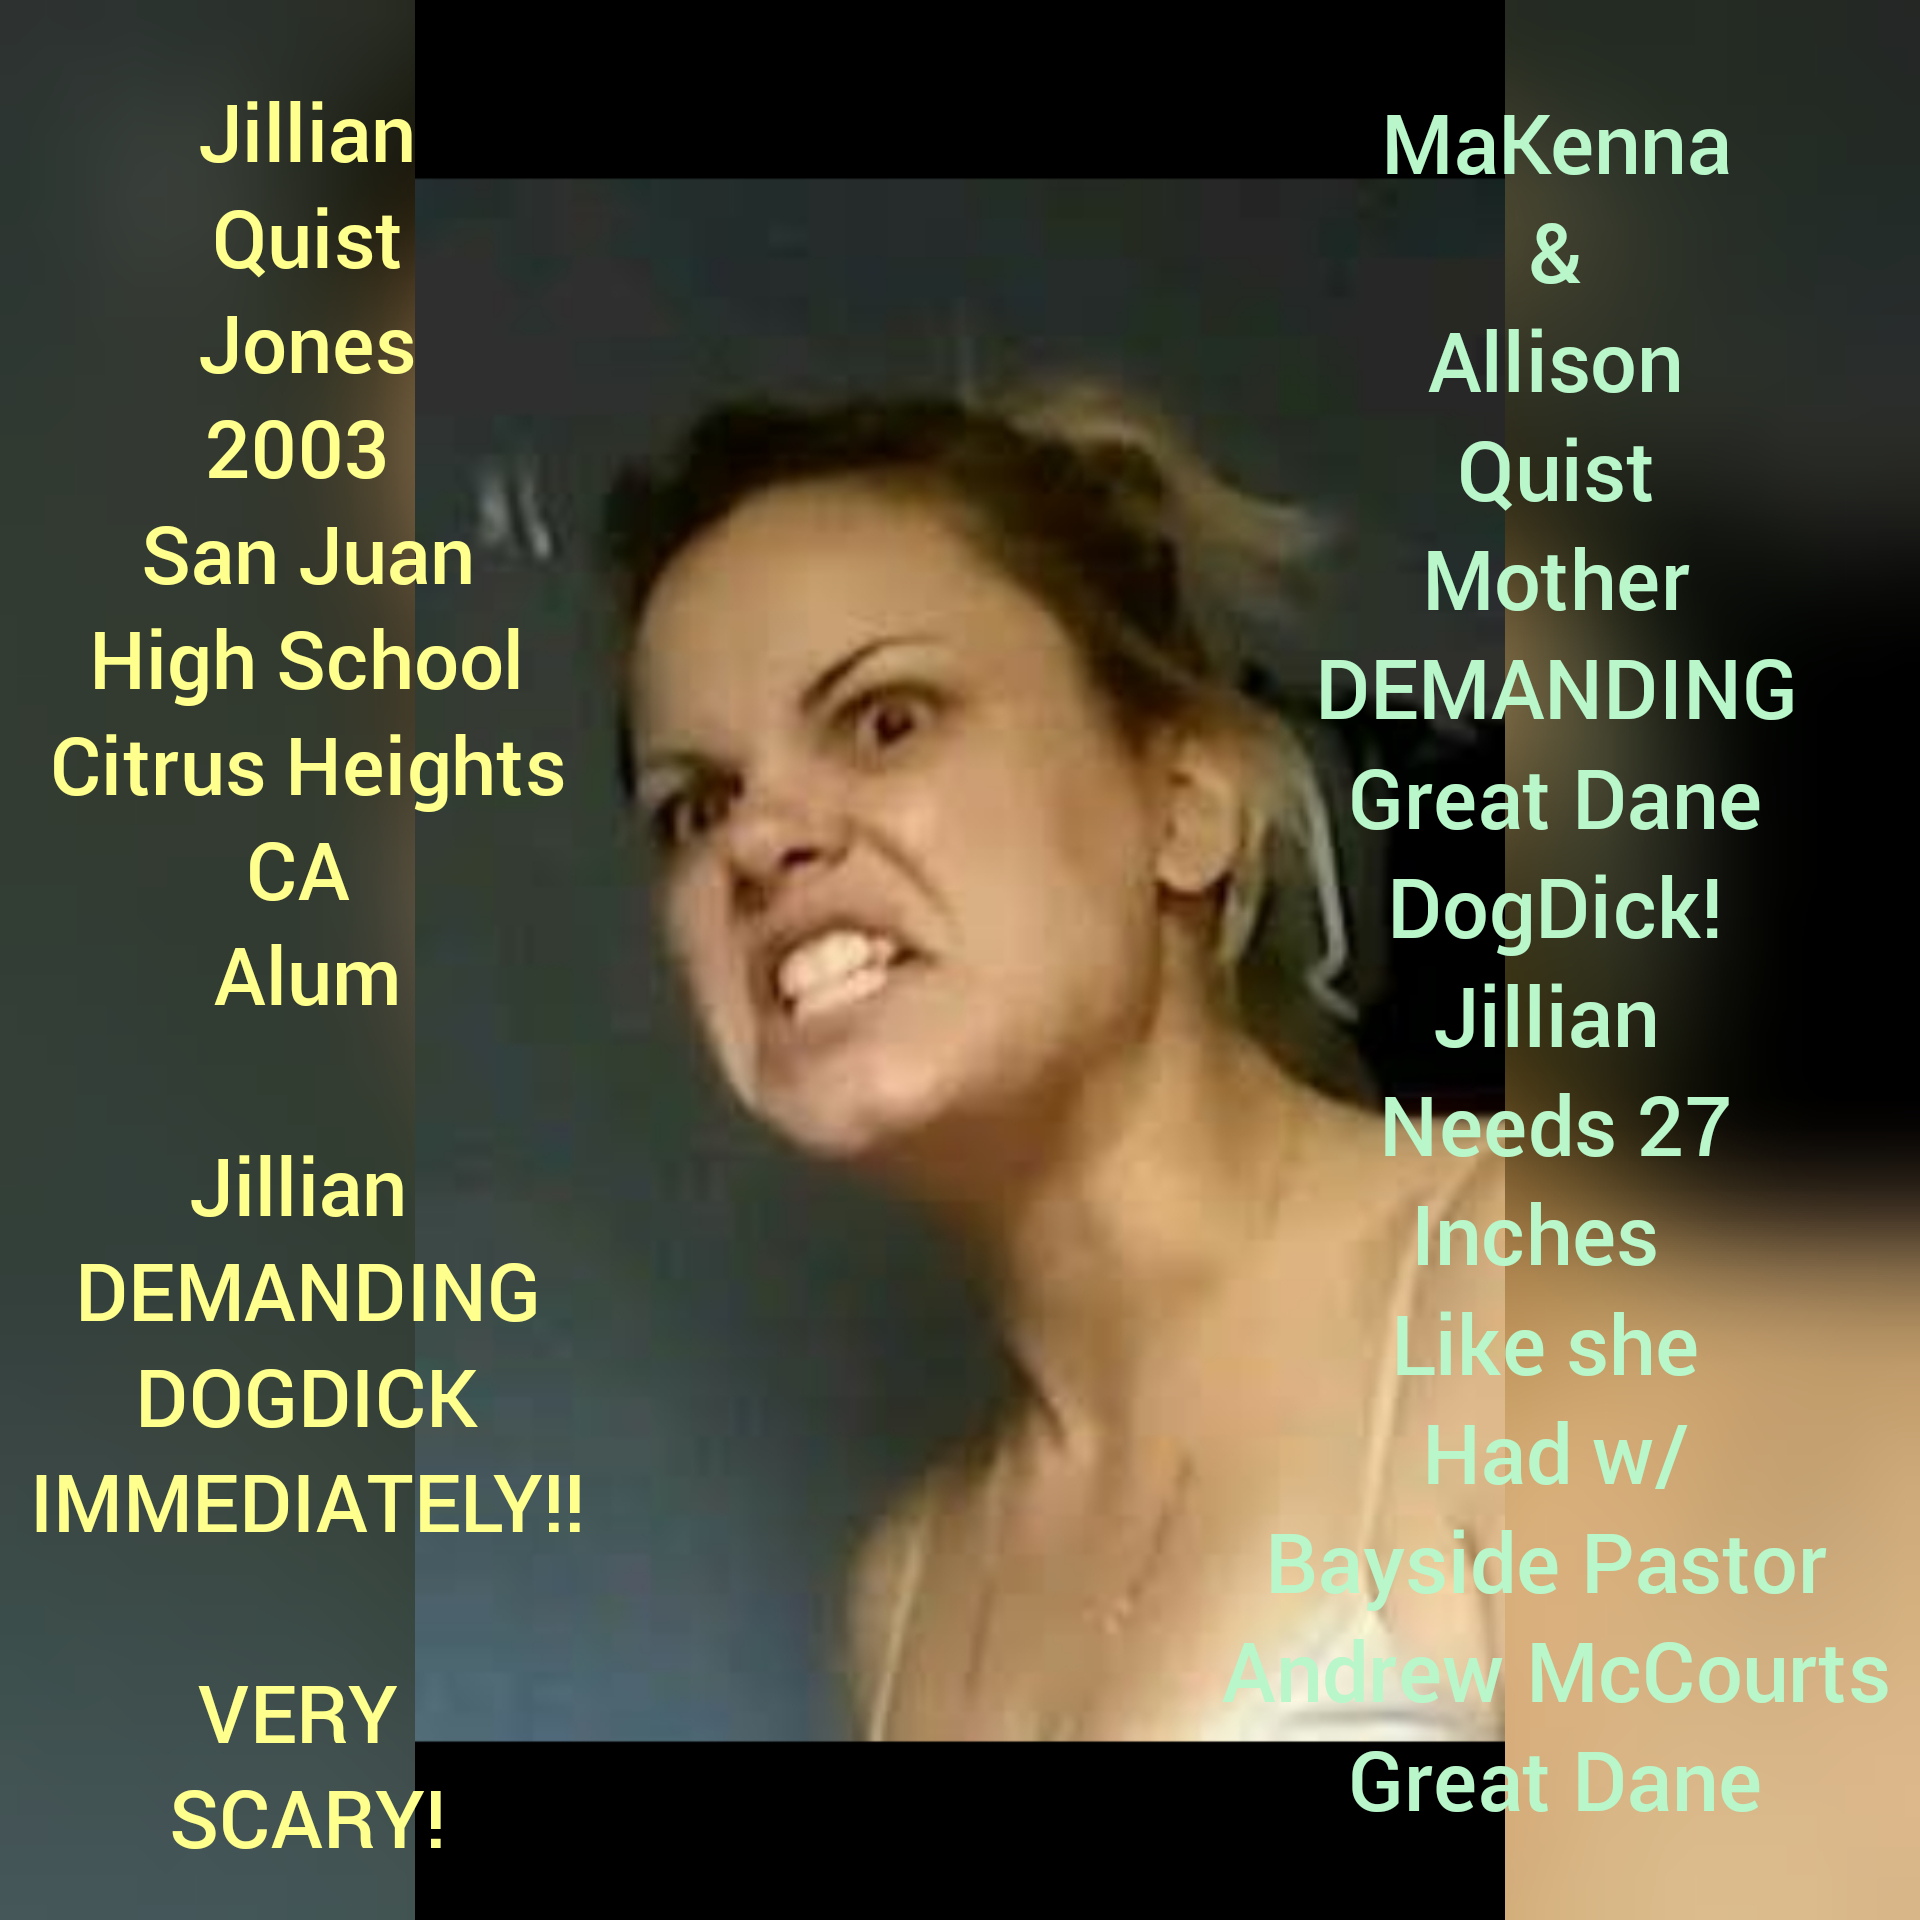 Jillian Quist Jones Eats DogDick Whole Blank Meme Template